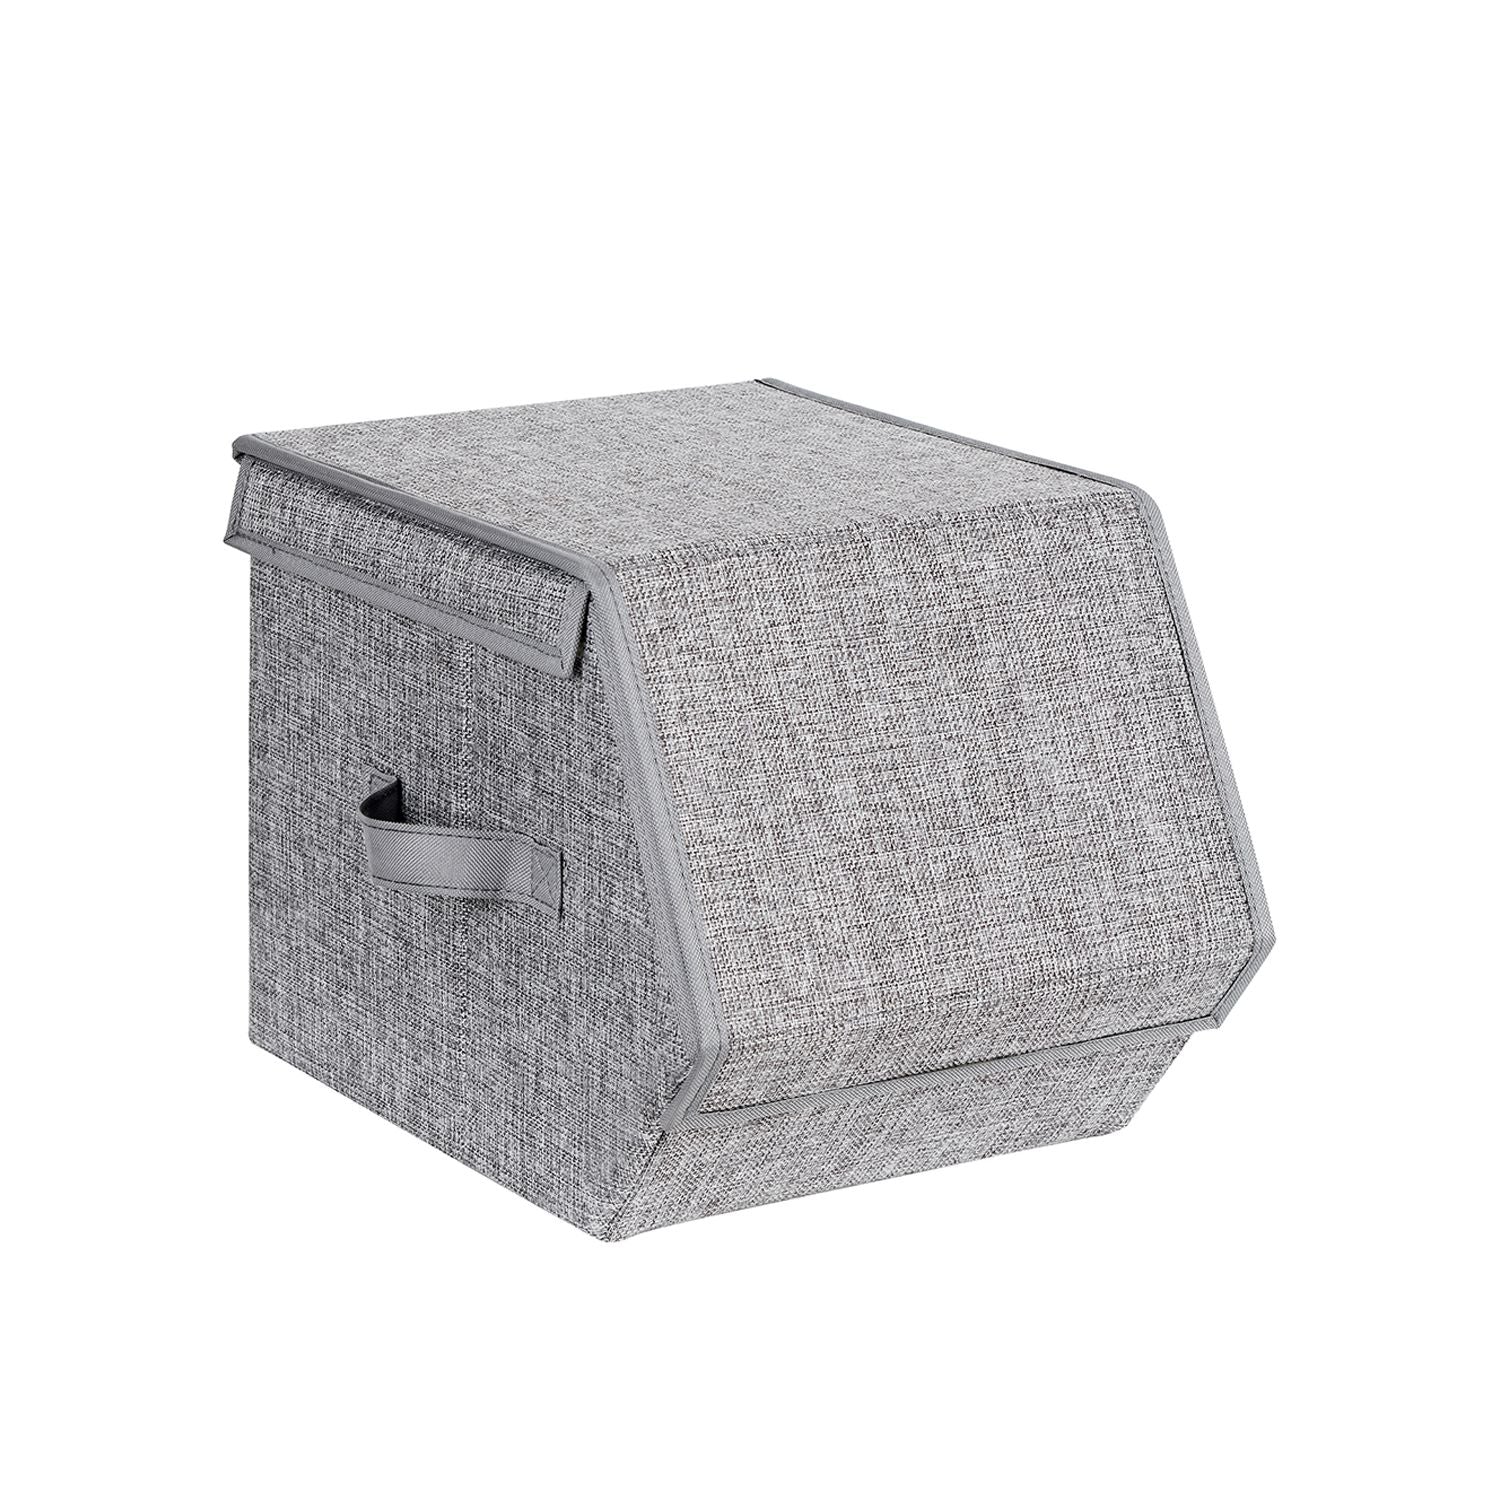 3er-Set Aufbewahrungsboxen mit Deckel Grau